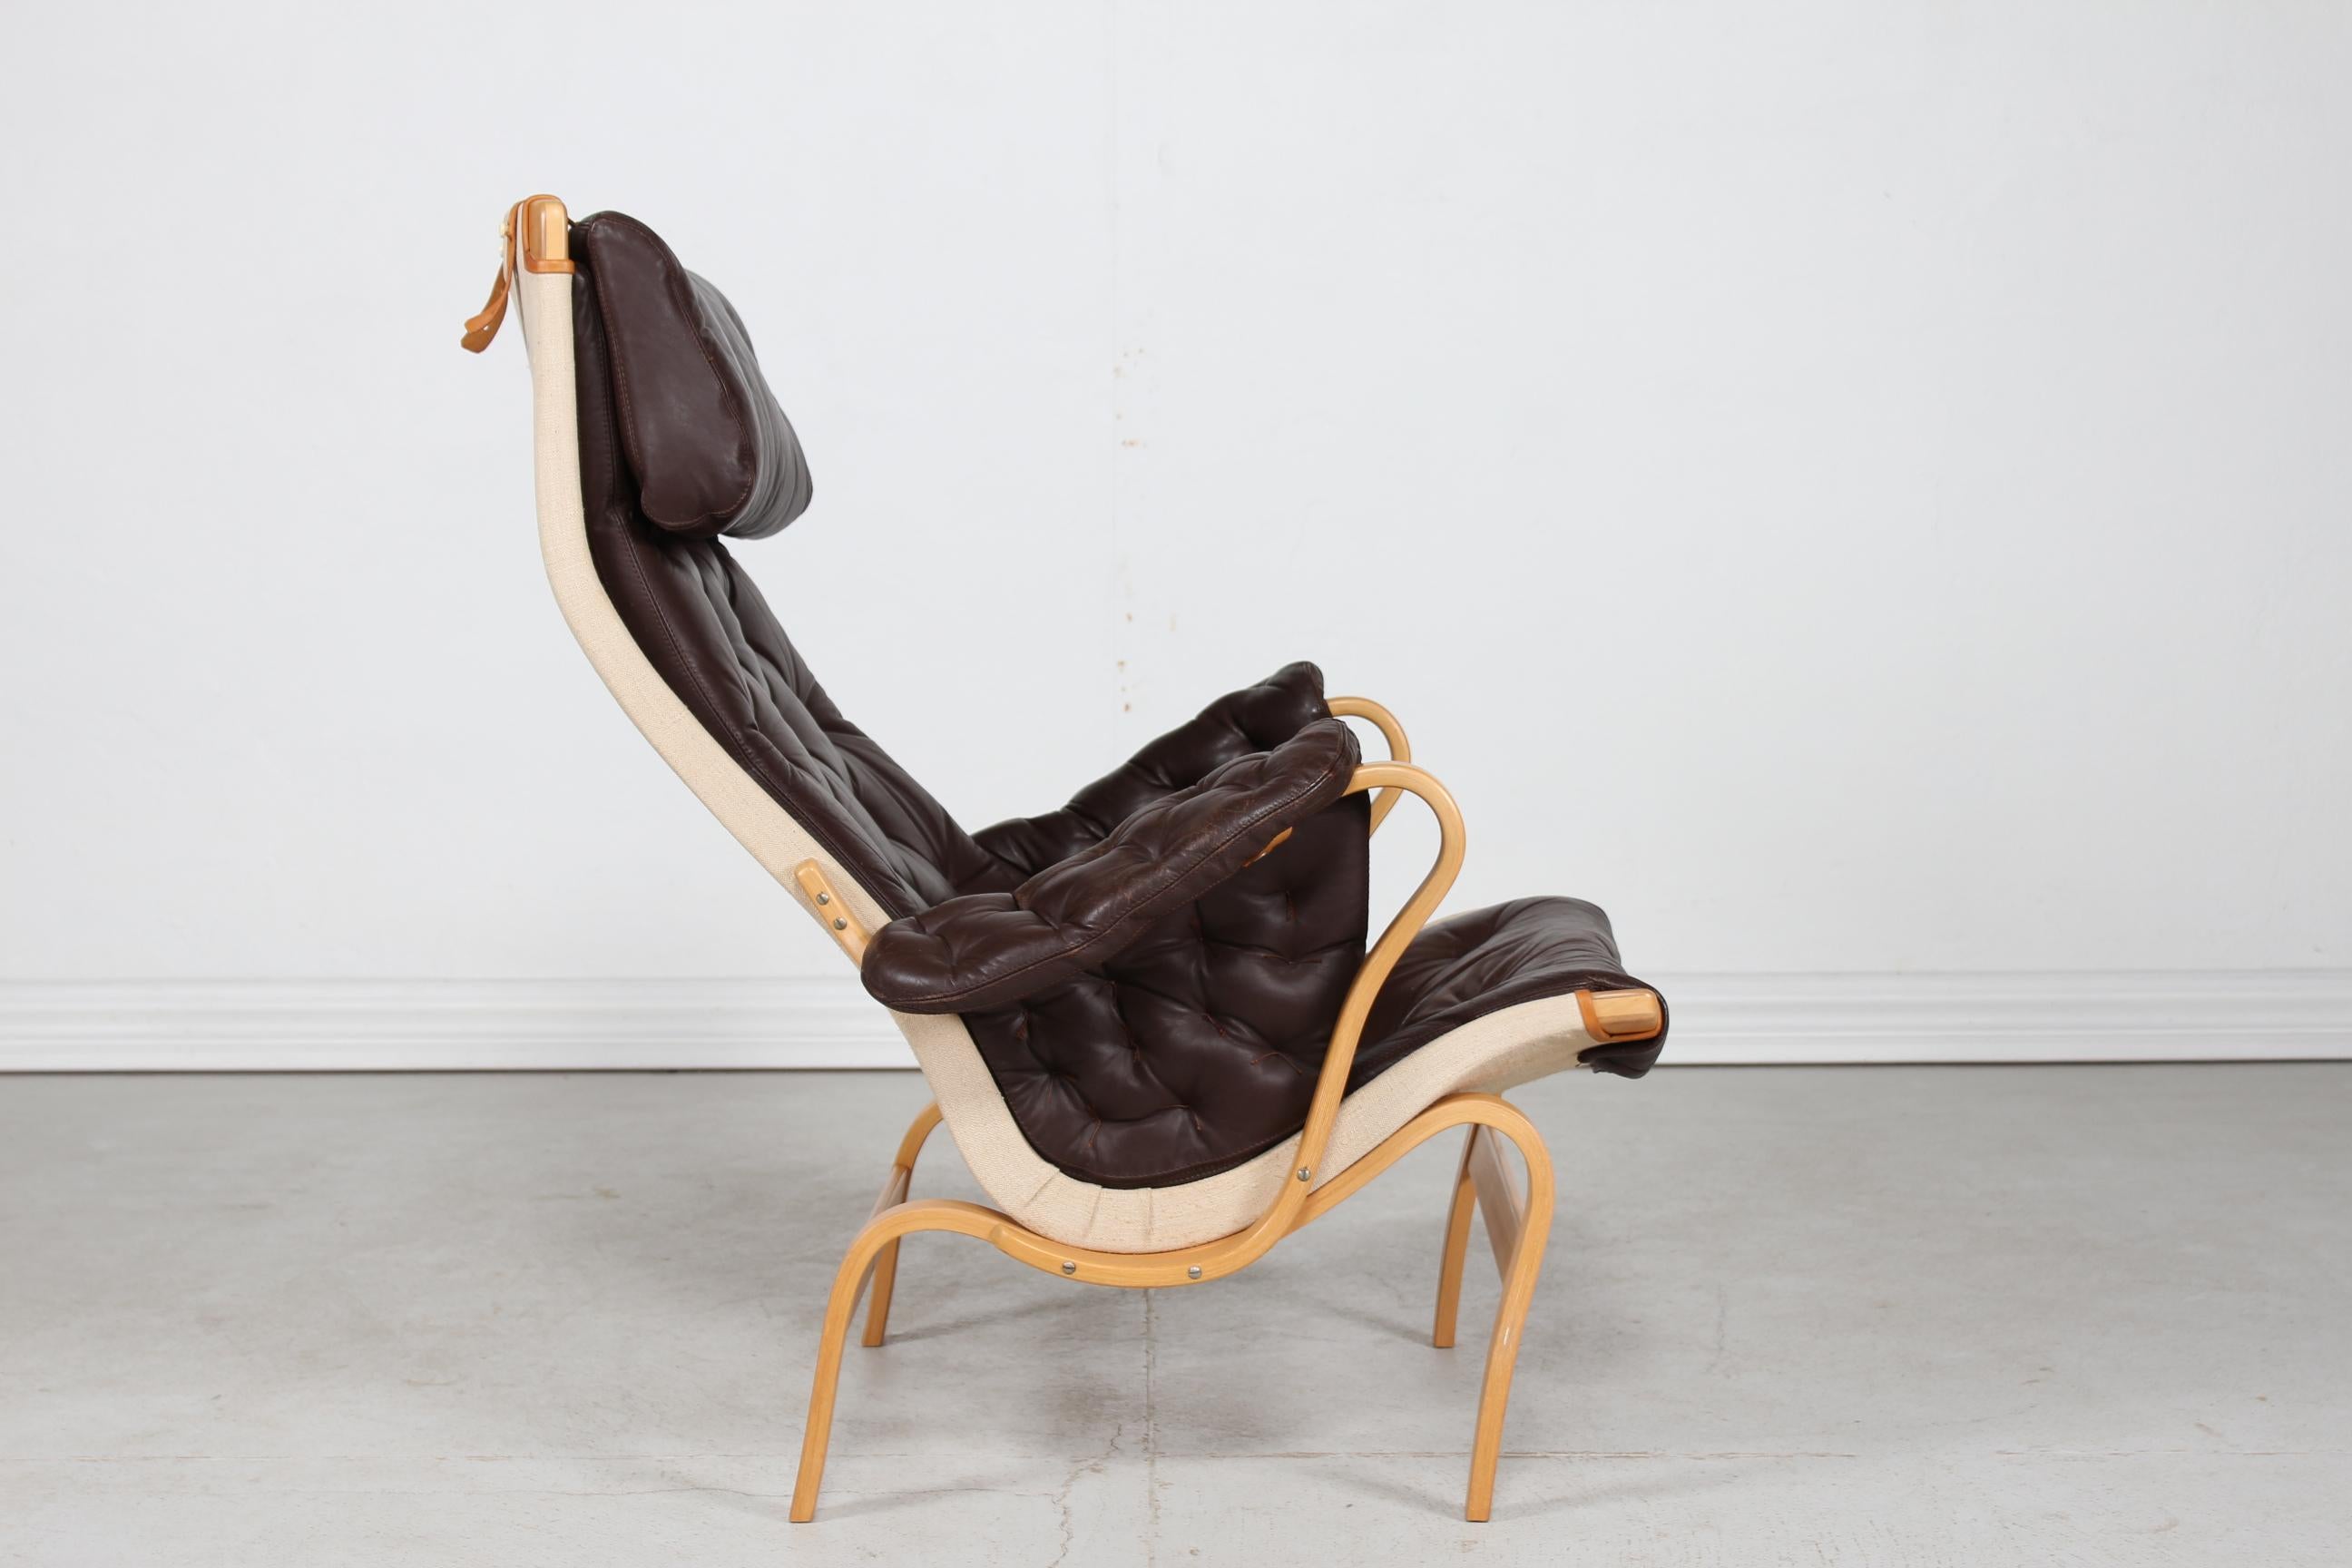 Moderner skandinavischer Sessel/Loungesessel Modell Pernilla, hergestellt von Dux of Sweden. Entworfen von dem Architekten und Designer Bruno Mathsson im Jahr 1944.
Das Gestell ist aus dampfgebogener, lackierter Buche und die Kissen sind mit